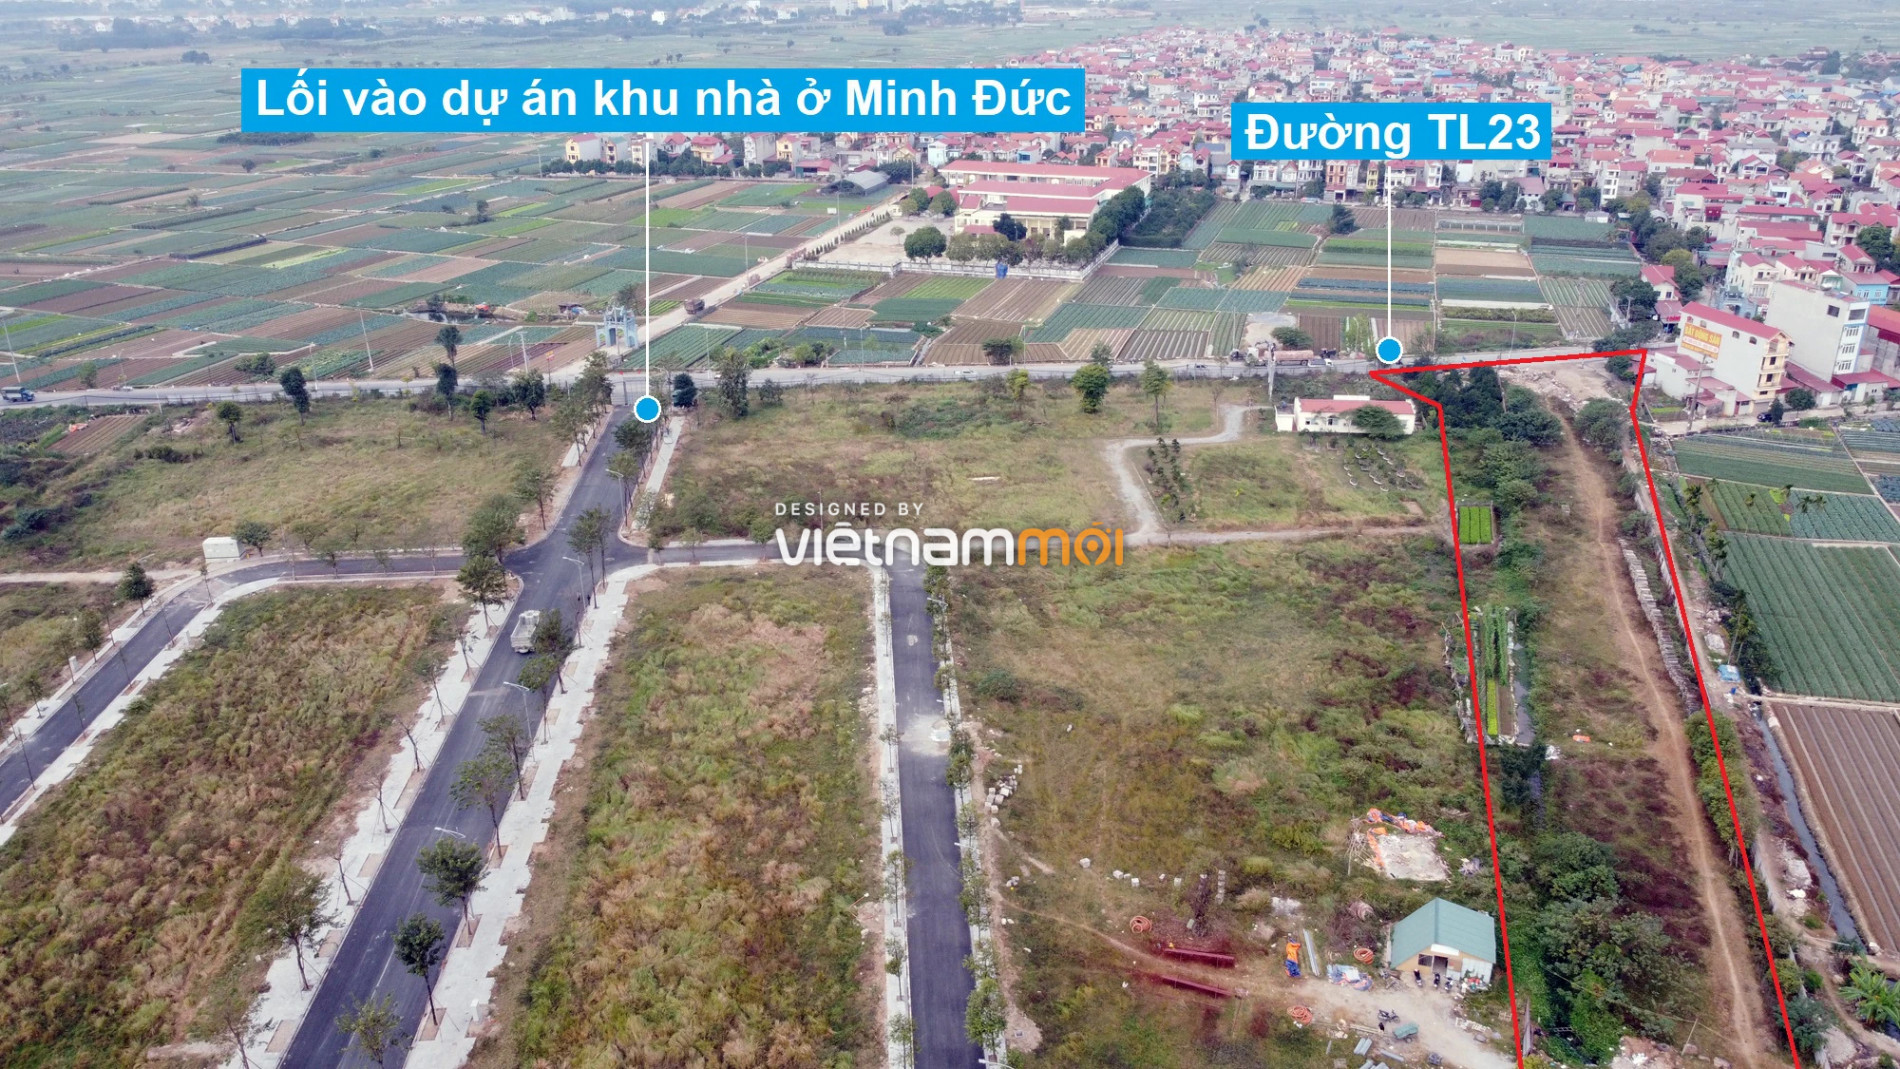 Những khu đất sắp thu hồi để mở đường ở xã Tiền Phong, Mê Linh, Hà Nội (phần 1) - Ảnh 5.